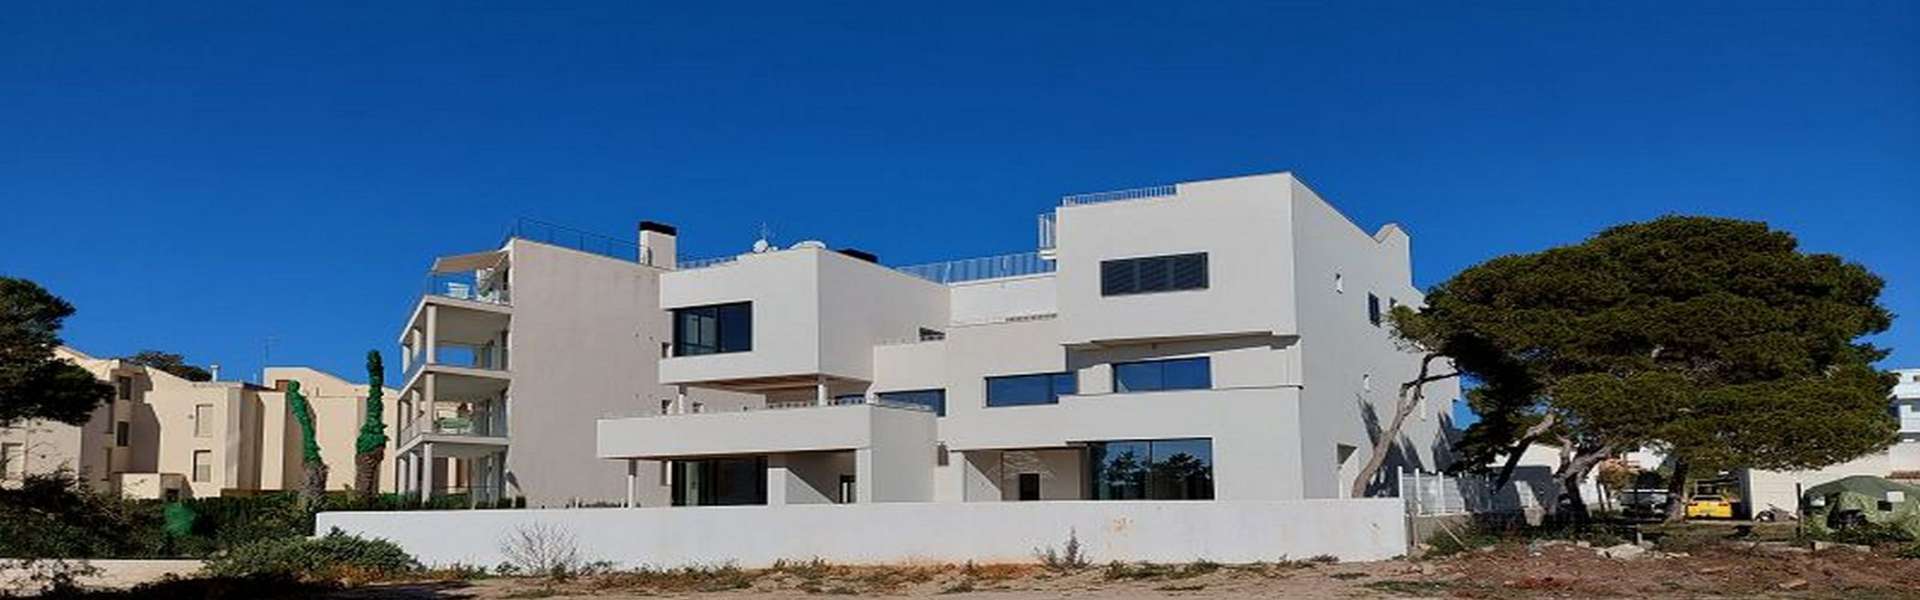 Zwei moderne Häuser mit Blick auf das Meer in Colonia de Sant Jordi 